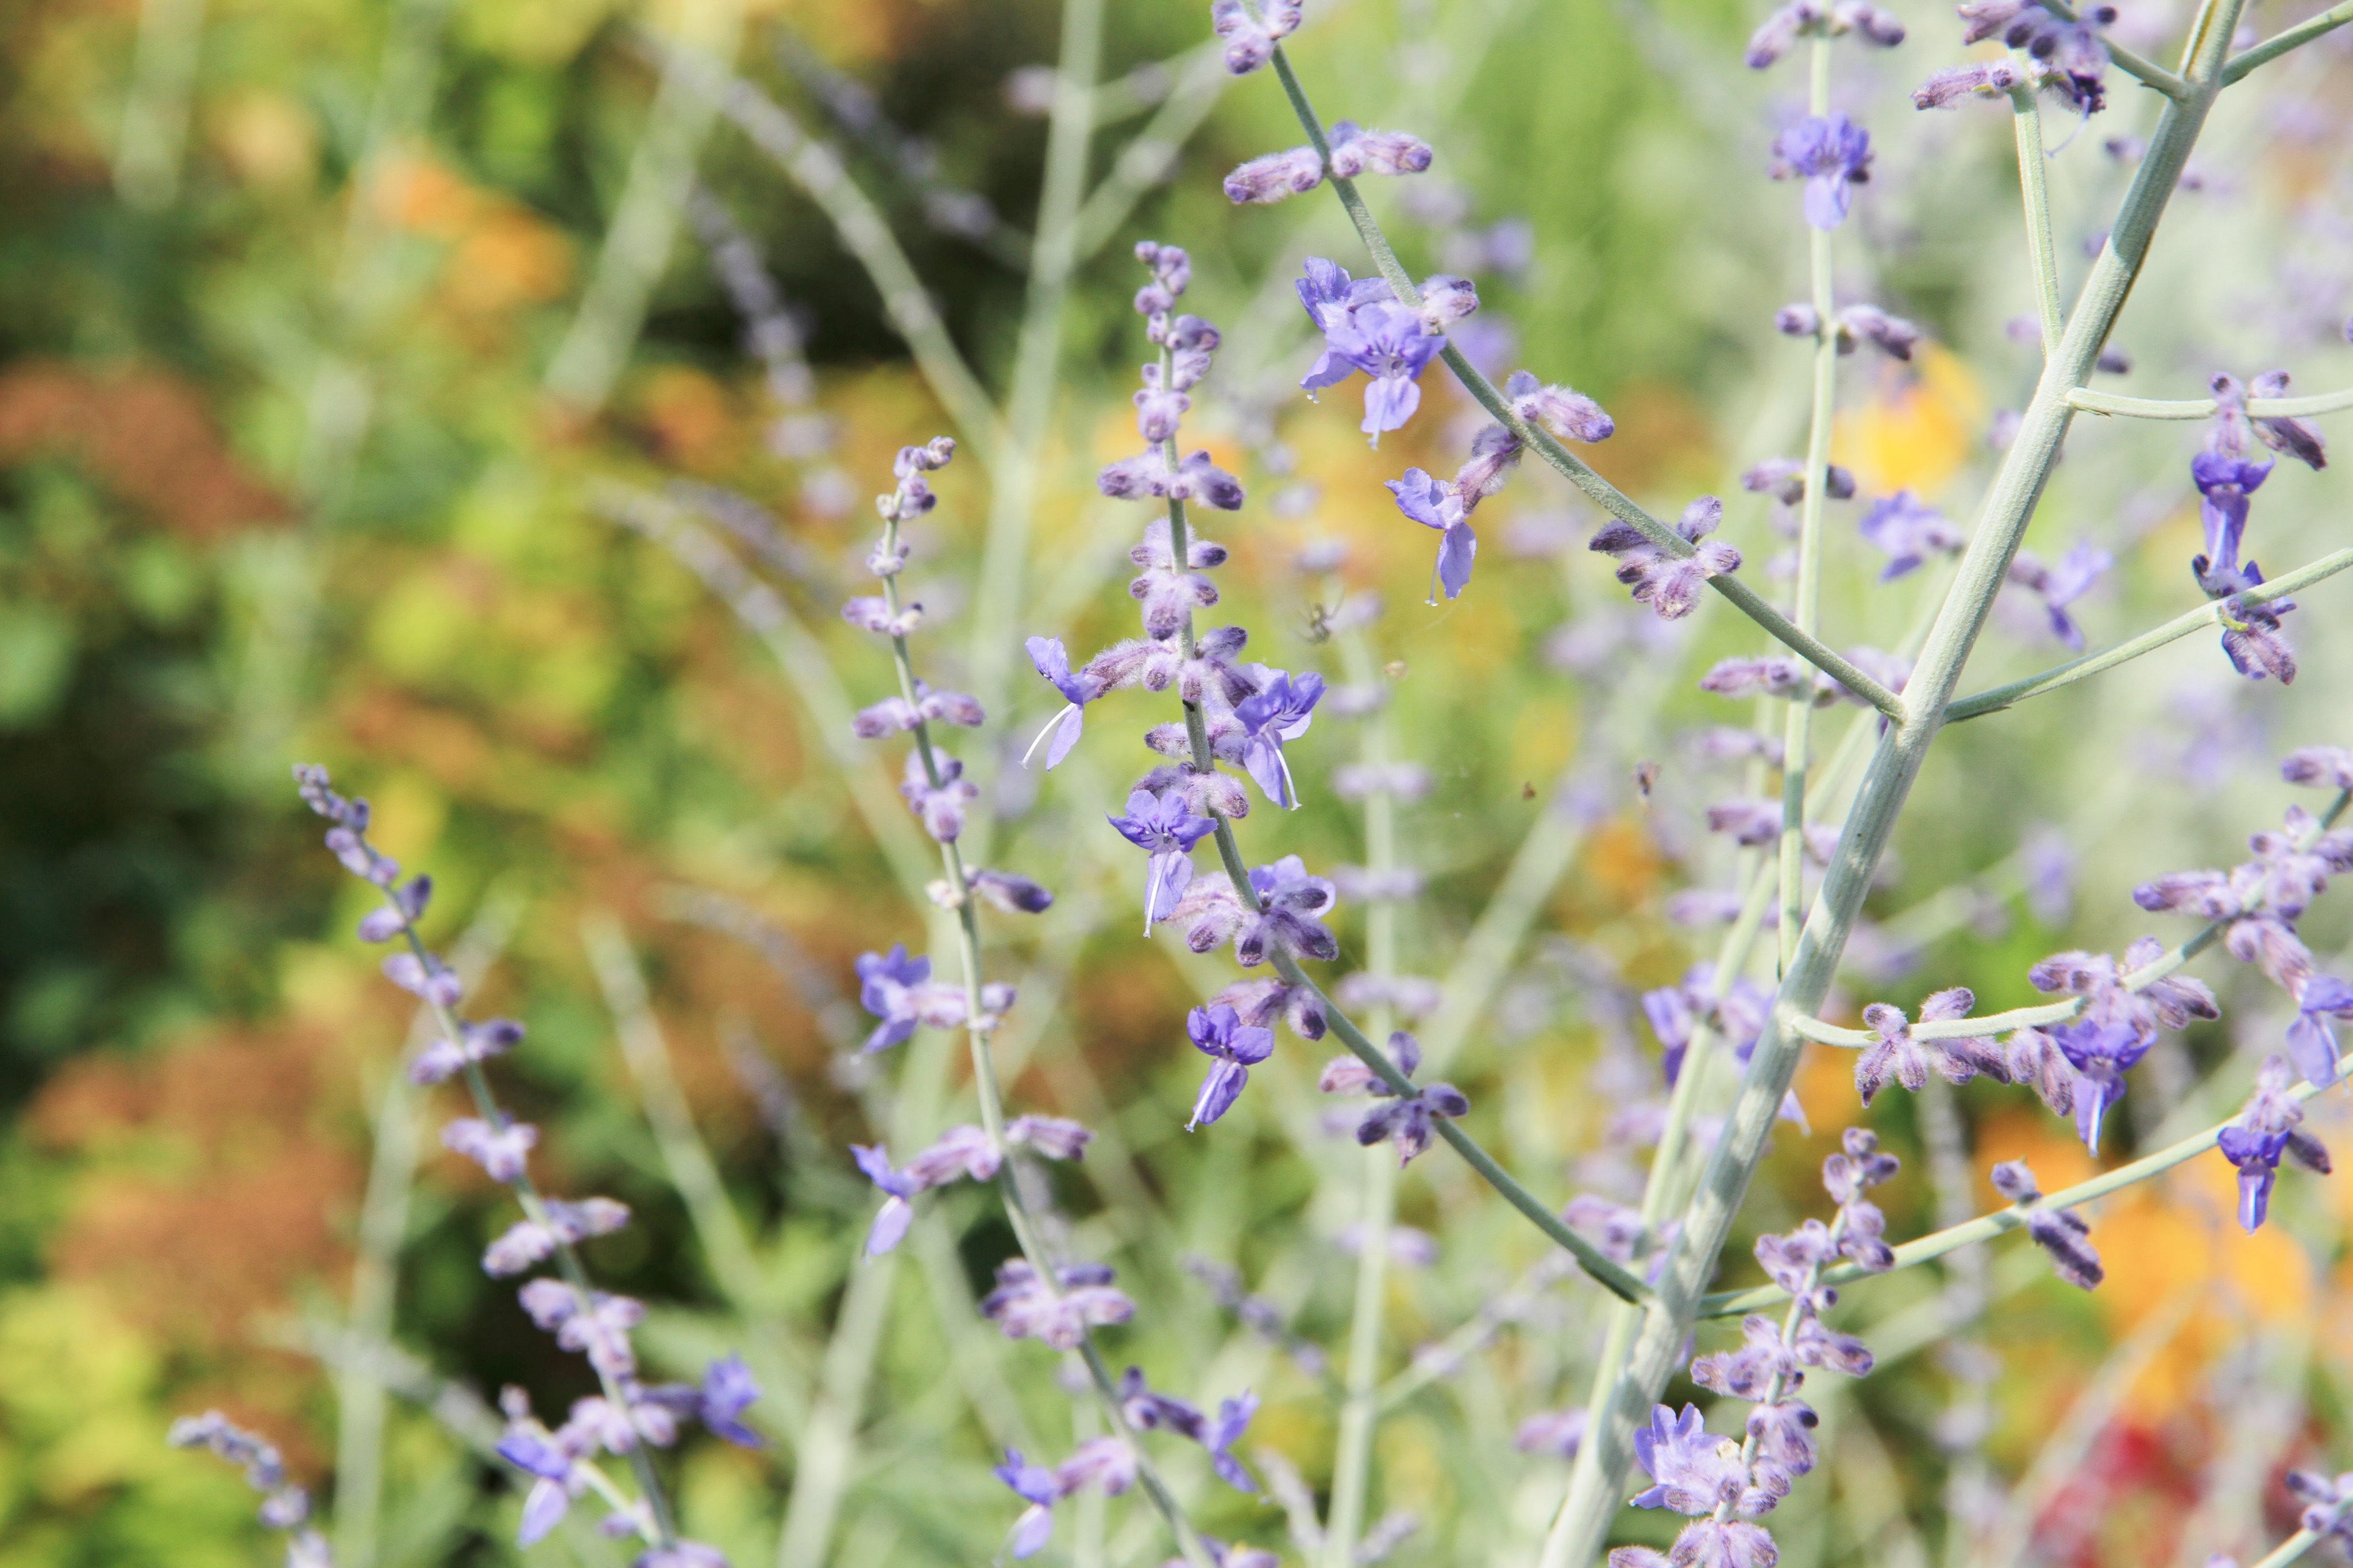 神戸布引ハーブ園 公式 ハーブガイド本日の一押し ロシアンセージ シソ科 風の丘エリアにて開花中です 青紫色の小さな花がたくさん咲きます 開花時期は初夏 夏にかけて 別名サマーラベンダーとも呼ばれていますが ラベンダーとは異なる植物です